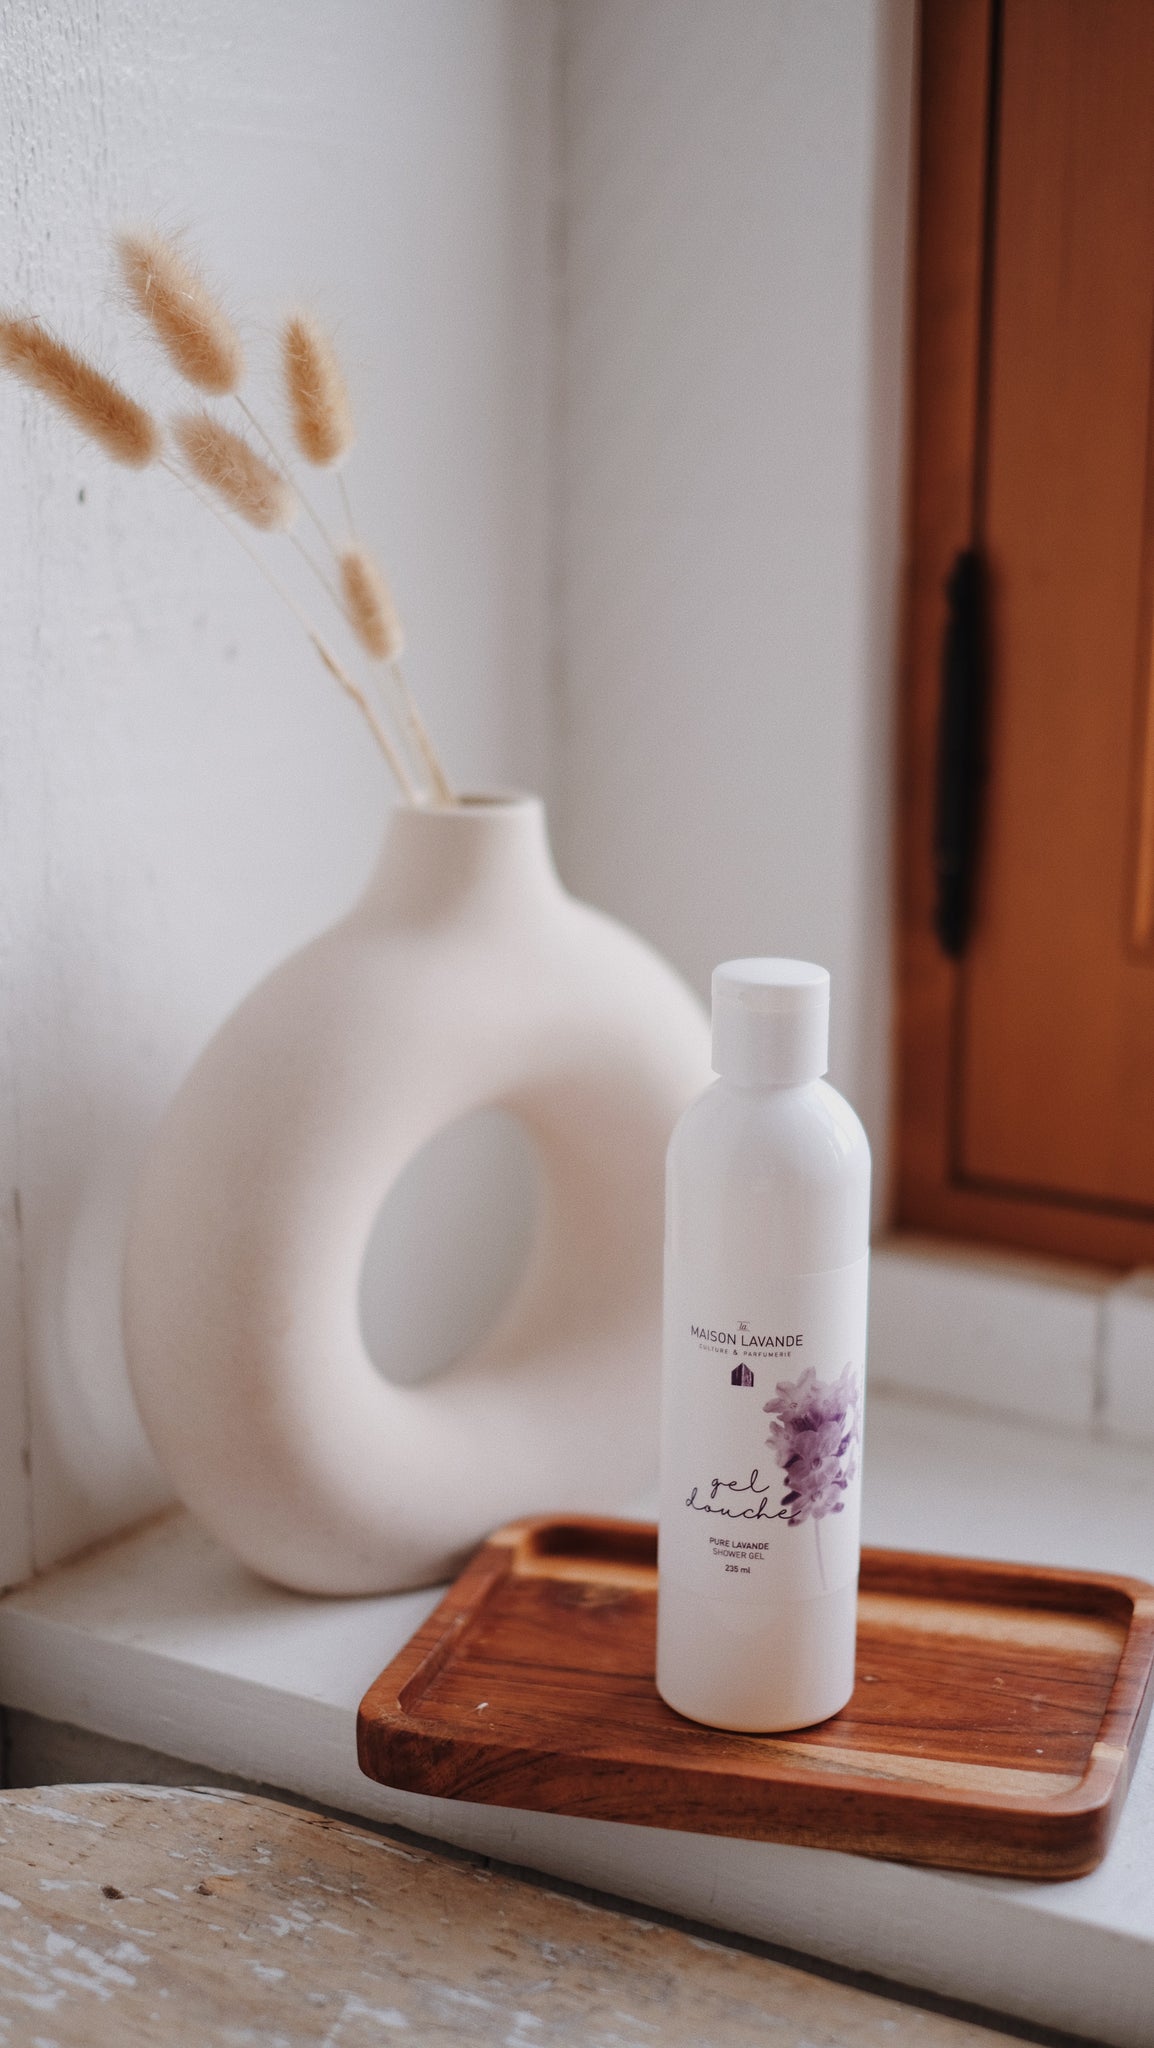 Gel douche - Pure Lavande||Shower gel - Pure Lavender